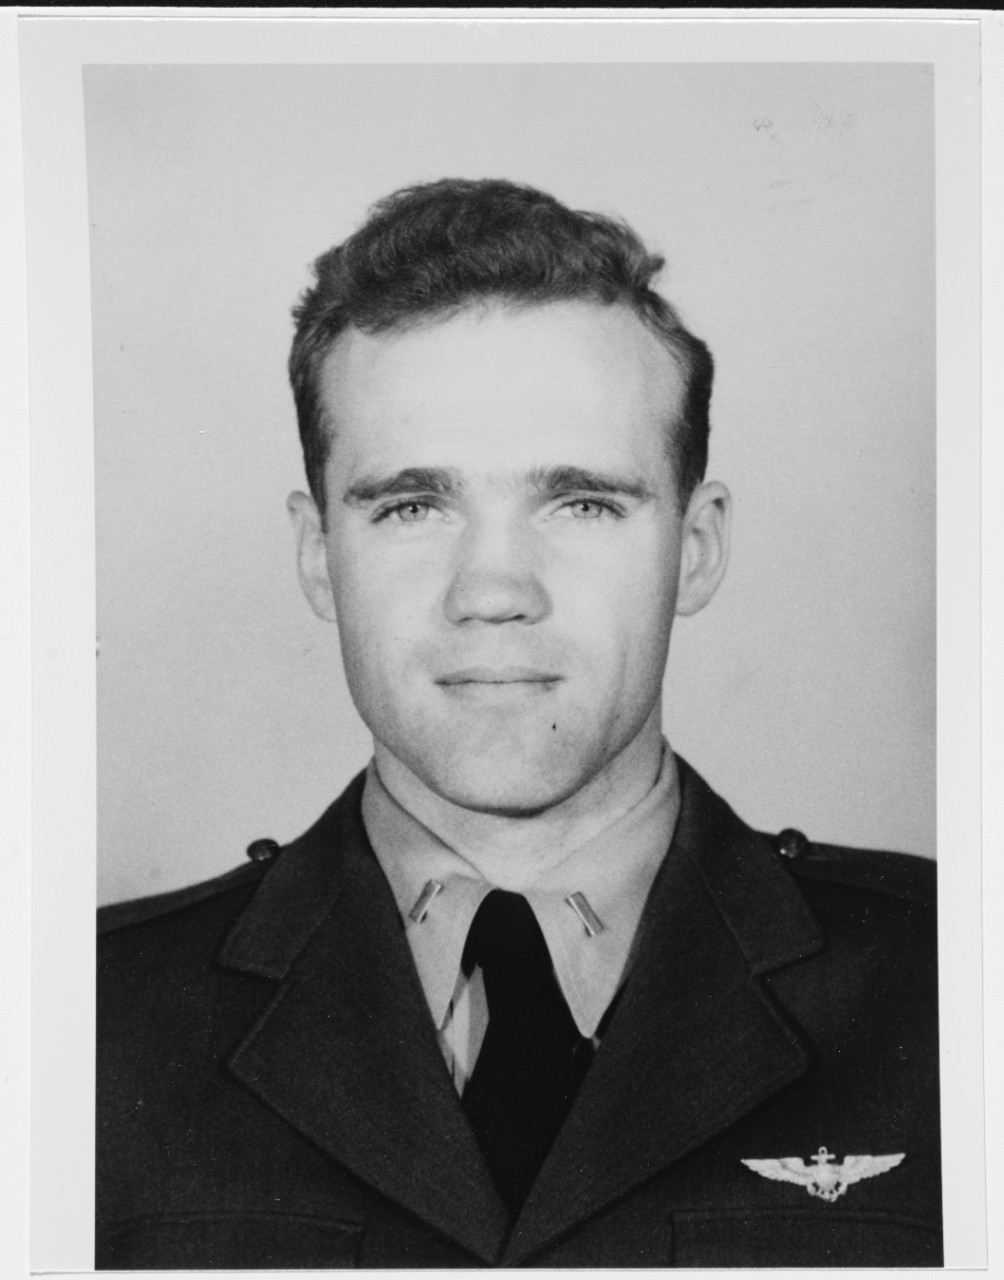 Lieutenant Junior Grade Robert D. Reynolds, USN. January 1949